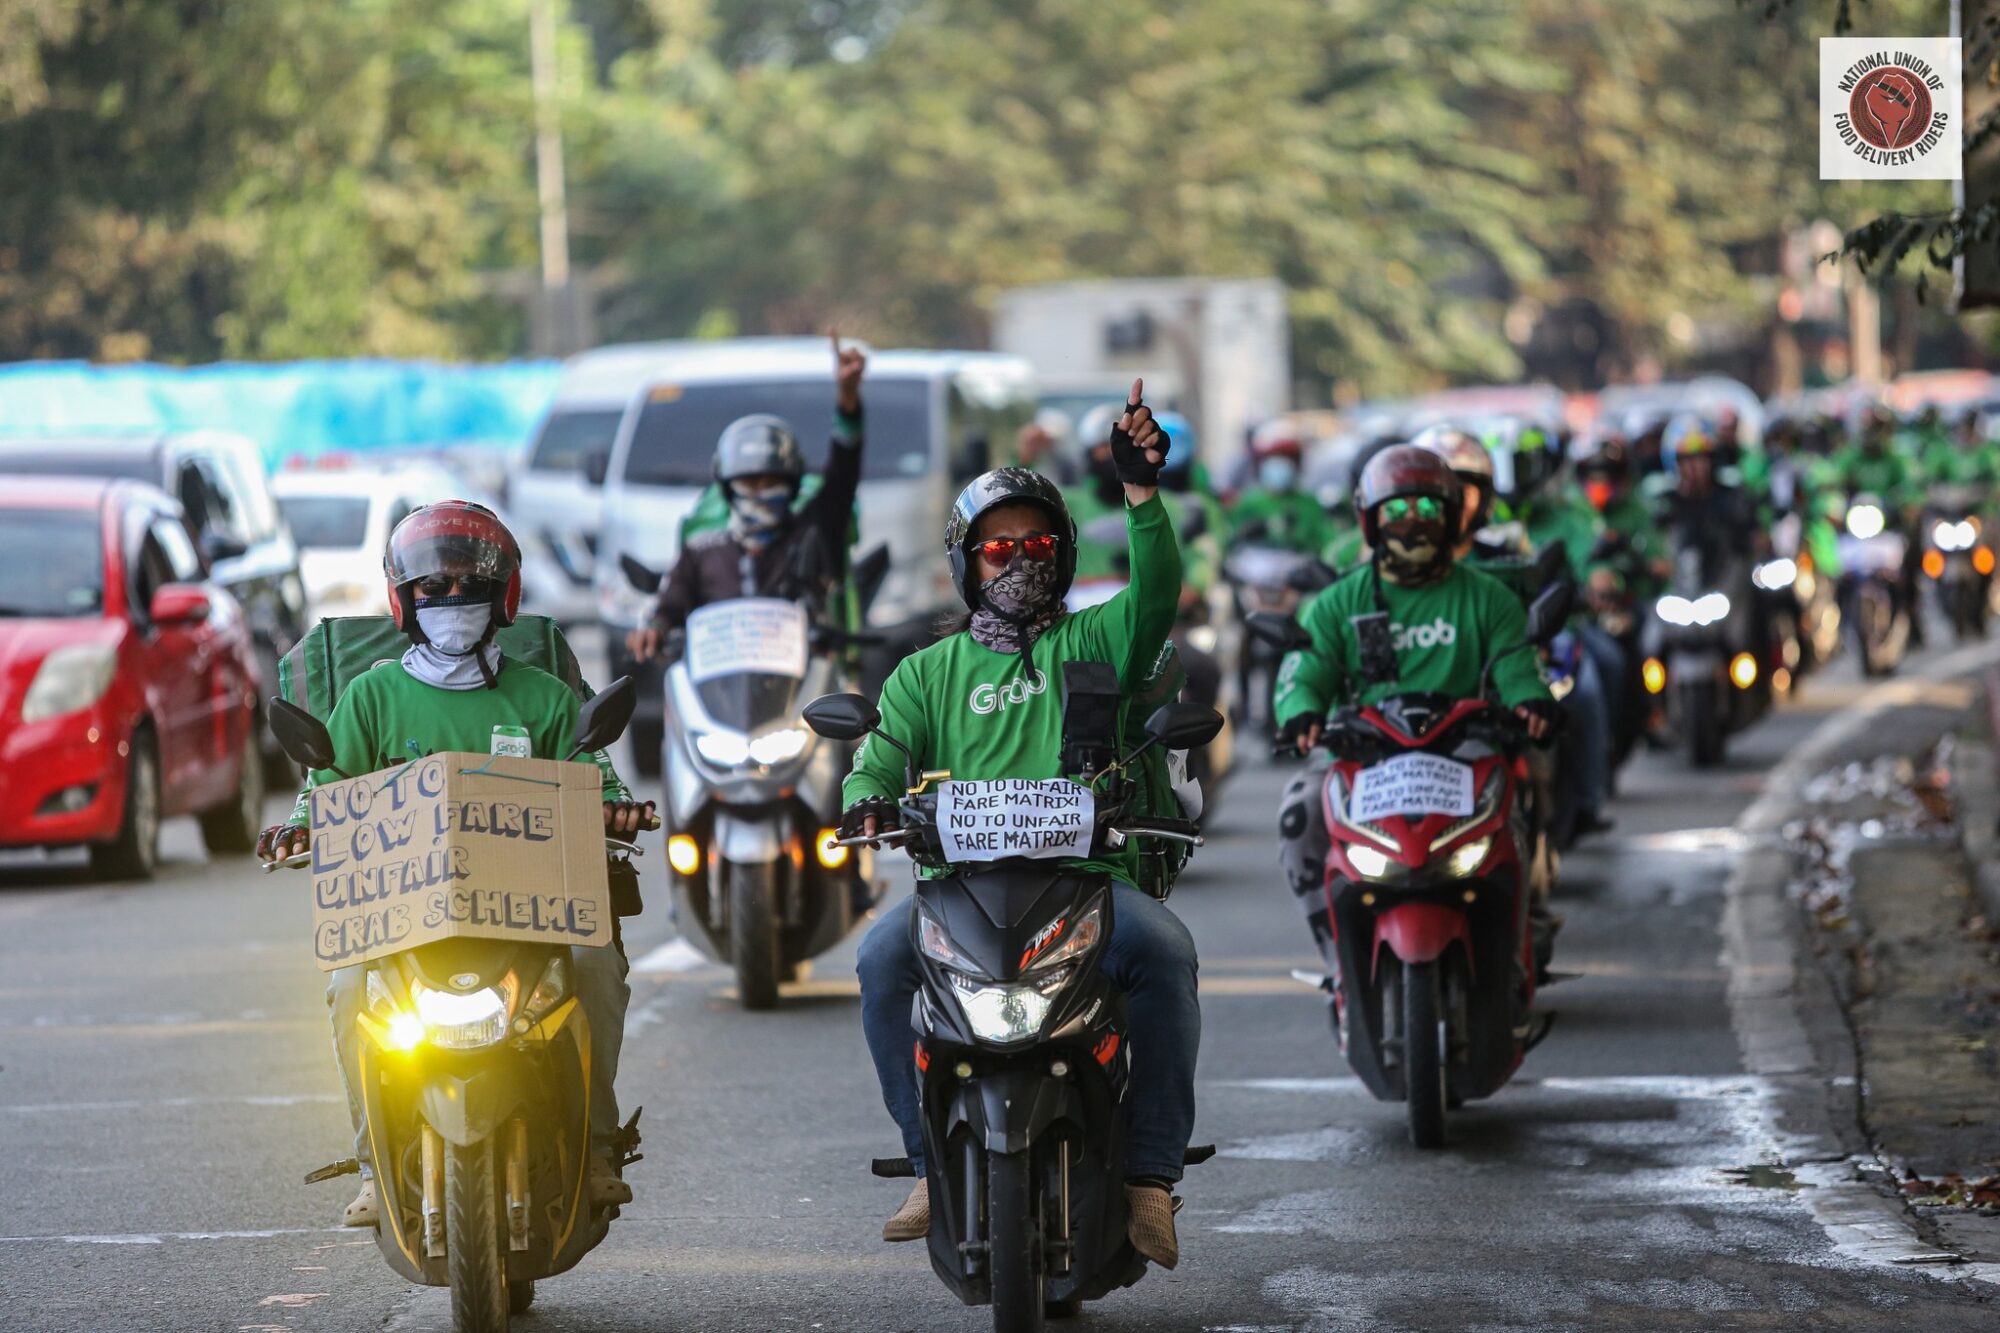 Grab Riders in Metro Manila Strike Against Unjust Fare Decrease